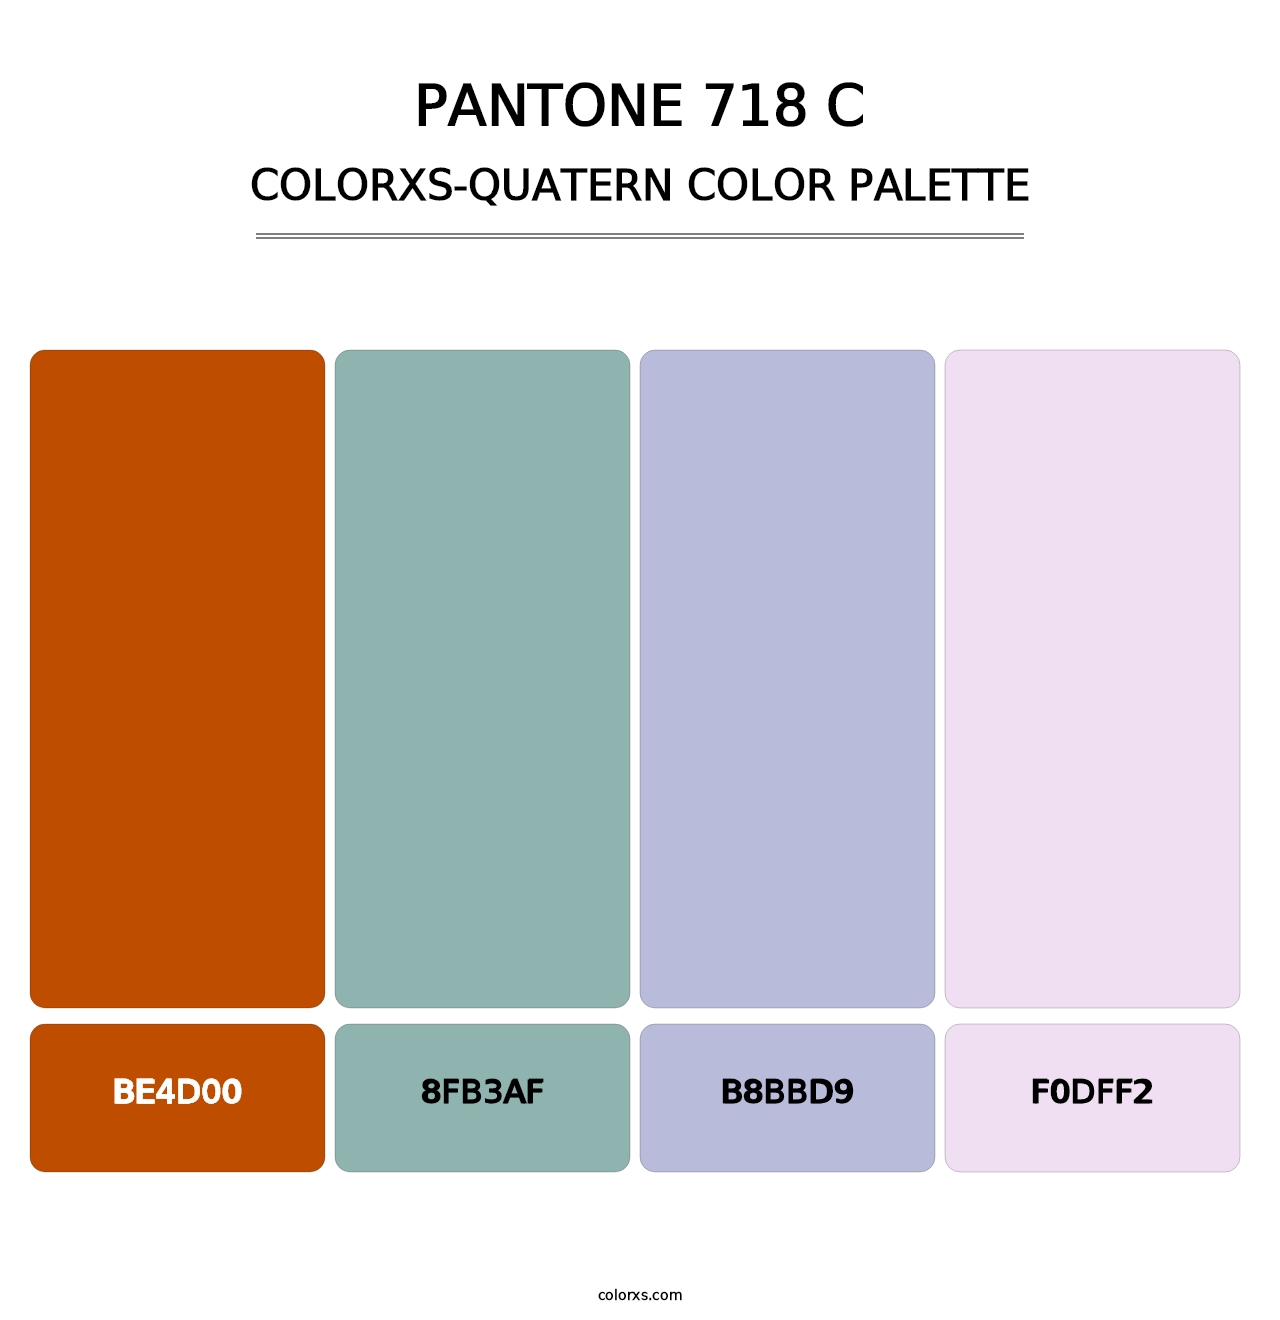 PANTONE 718 C - Colorxs Quatern Palette